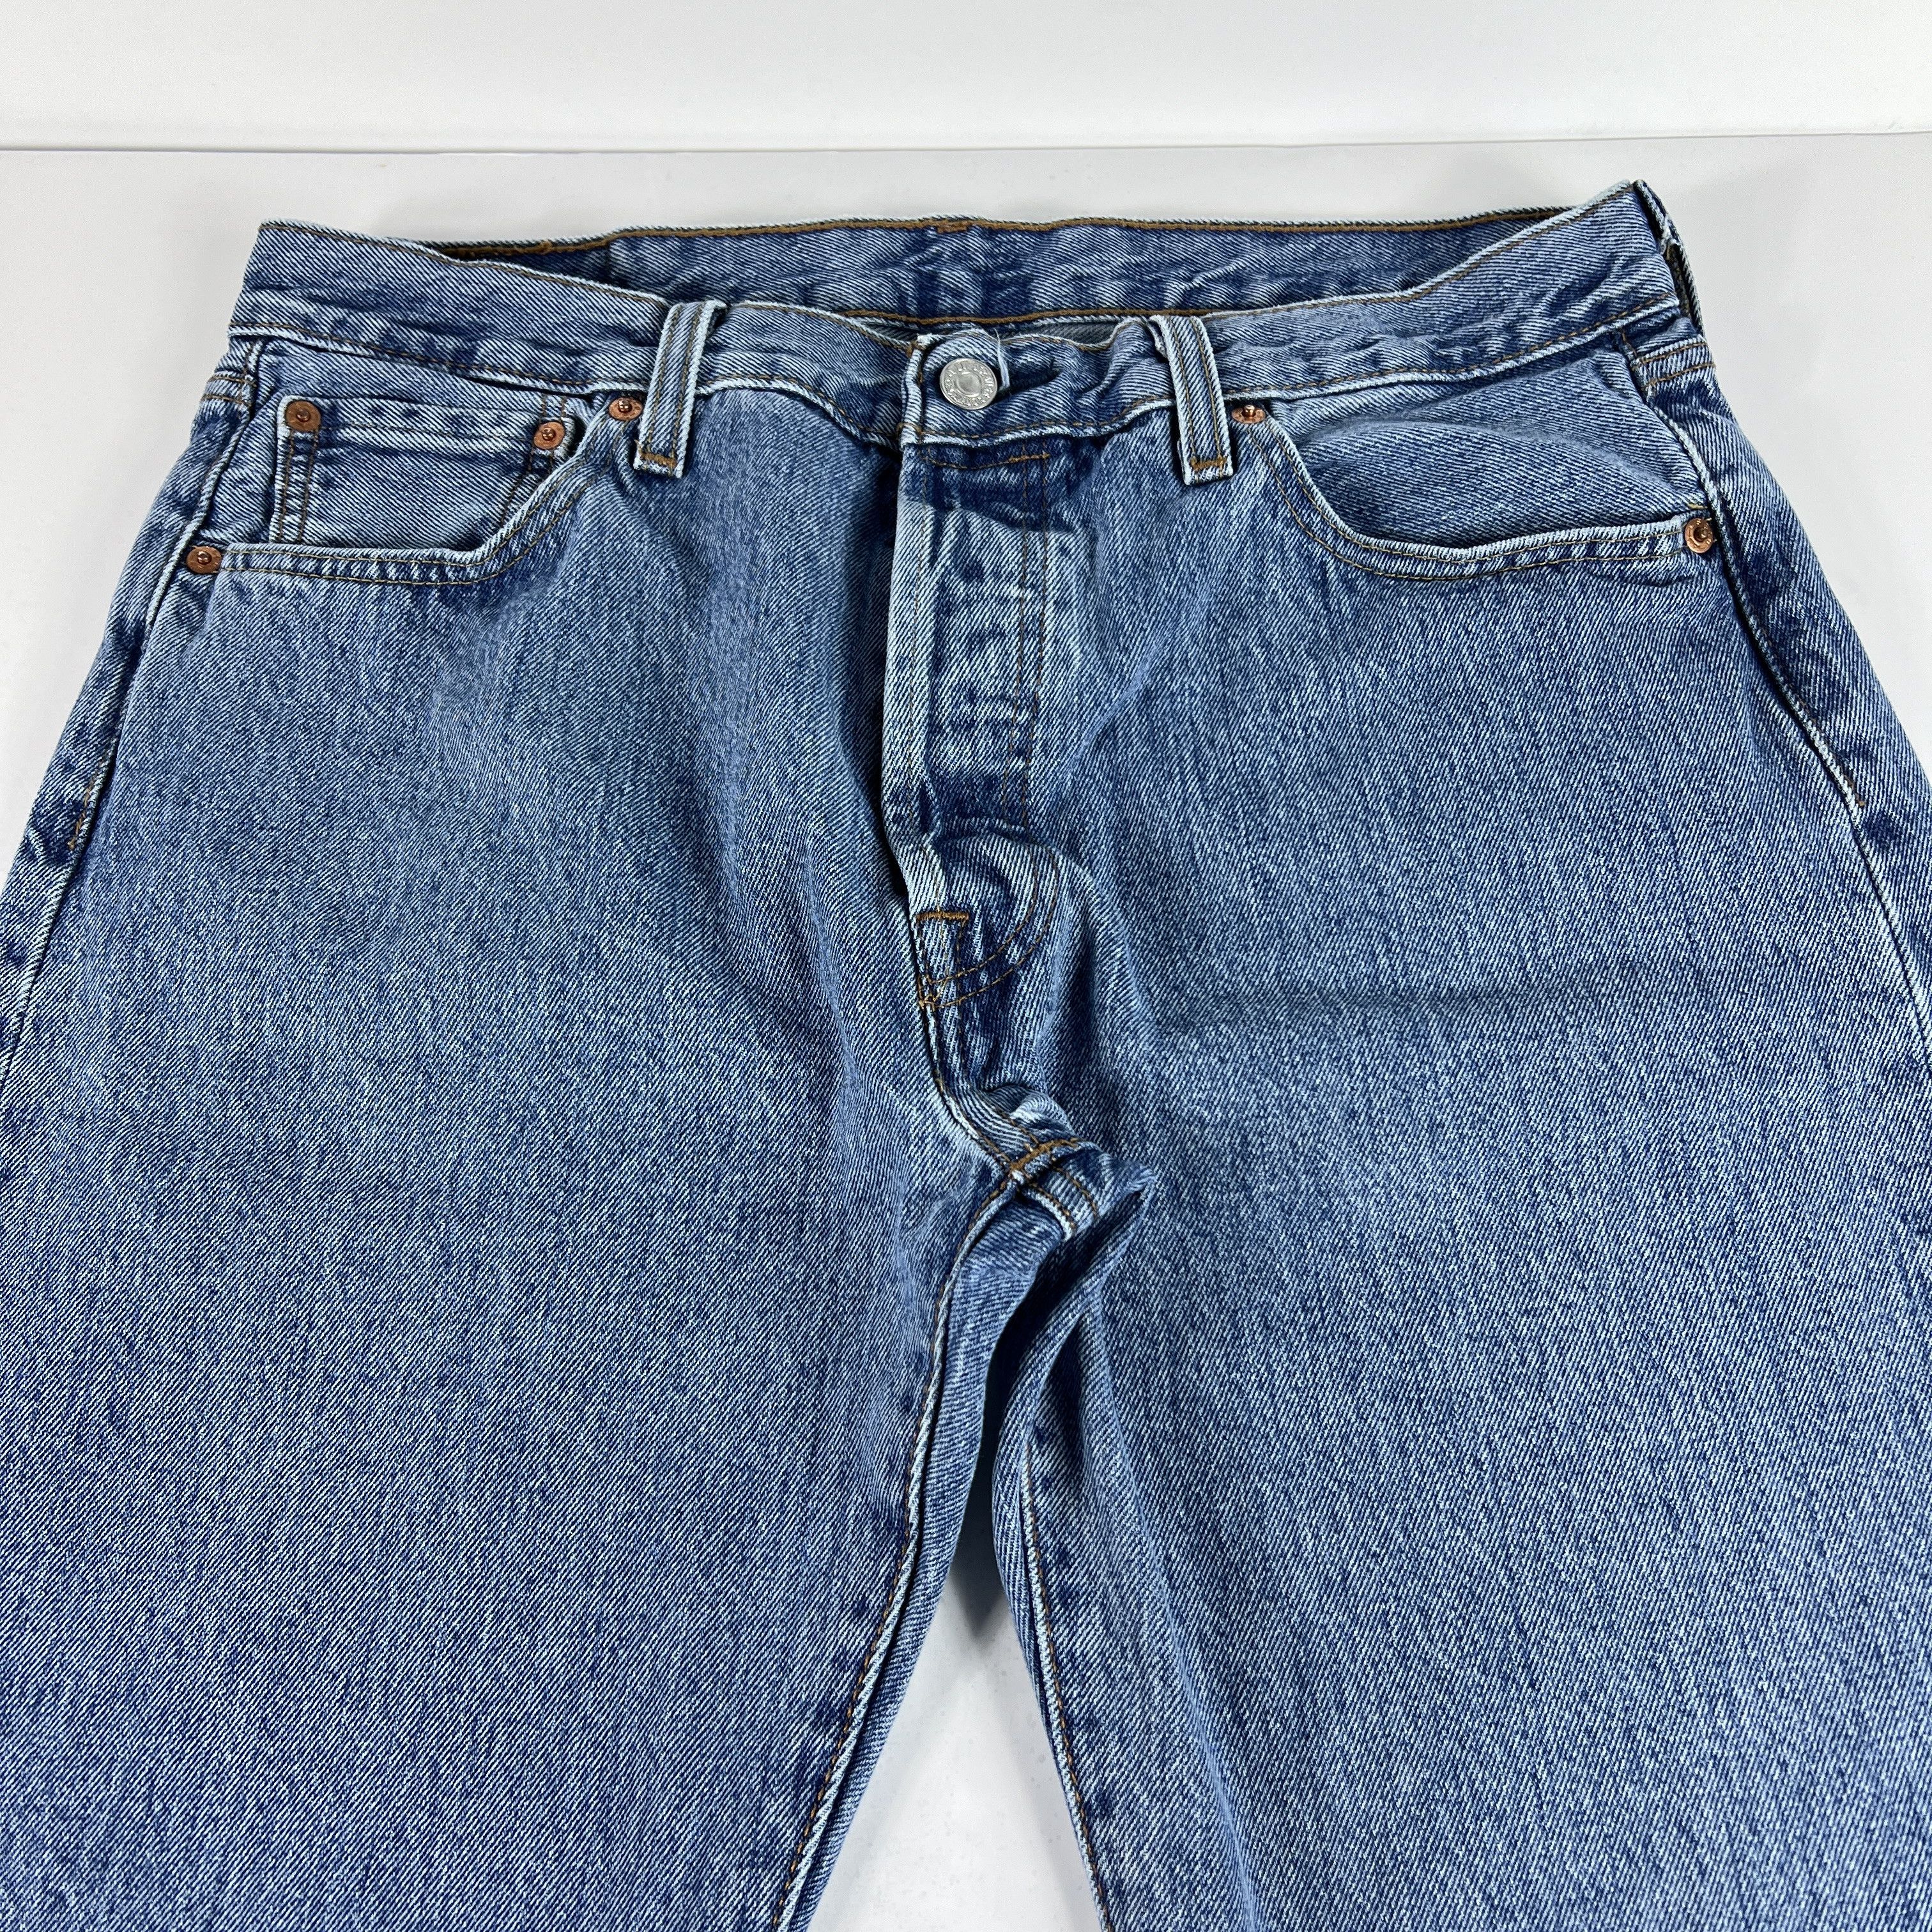 Levi's Levi's Jeans 501 XX Original Straight Blue Cotton Denim Size US 33 - 2 Preview